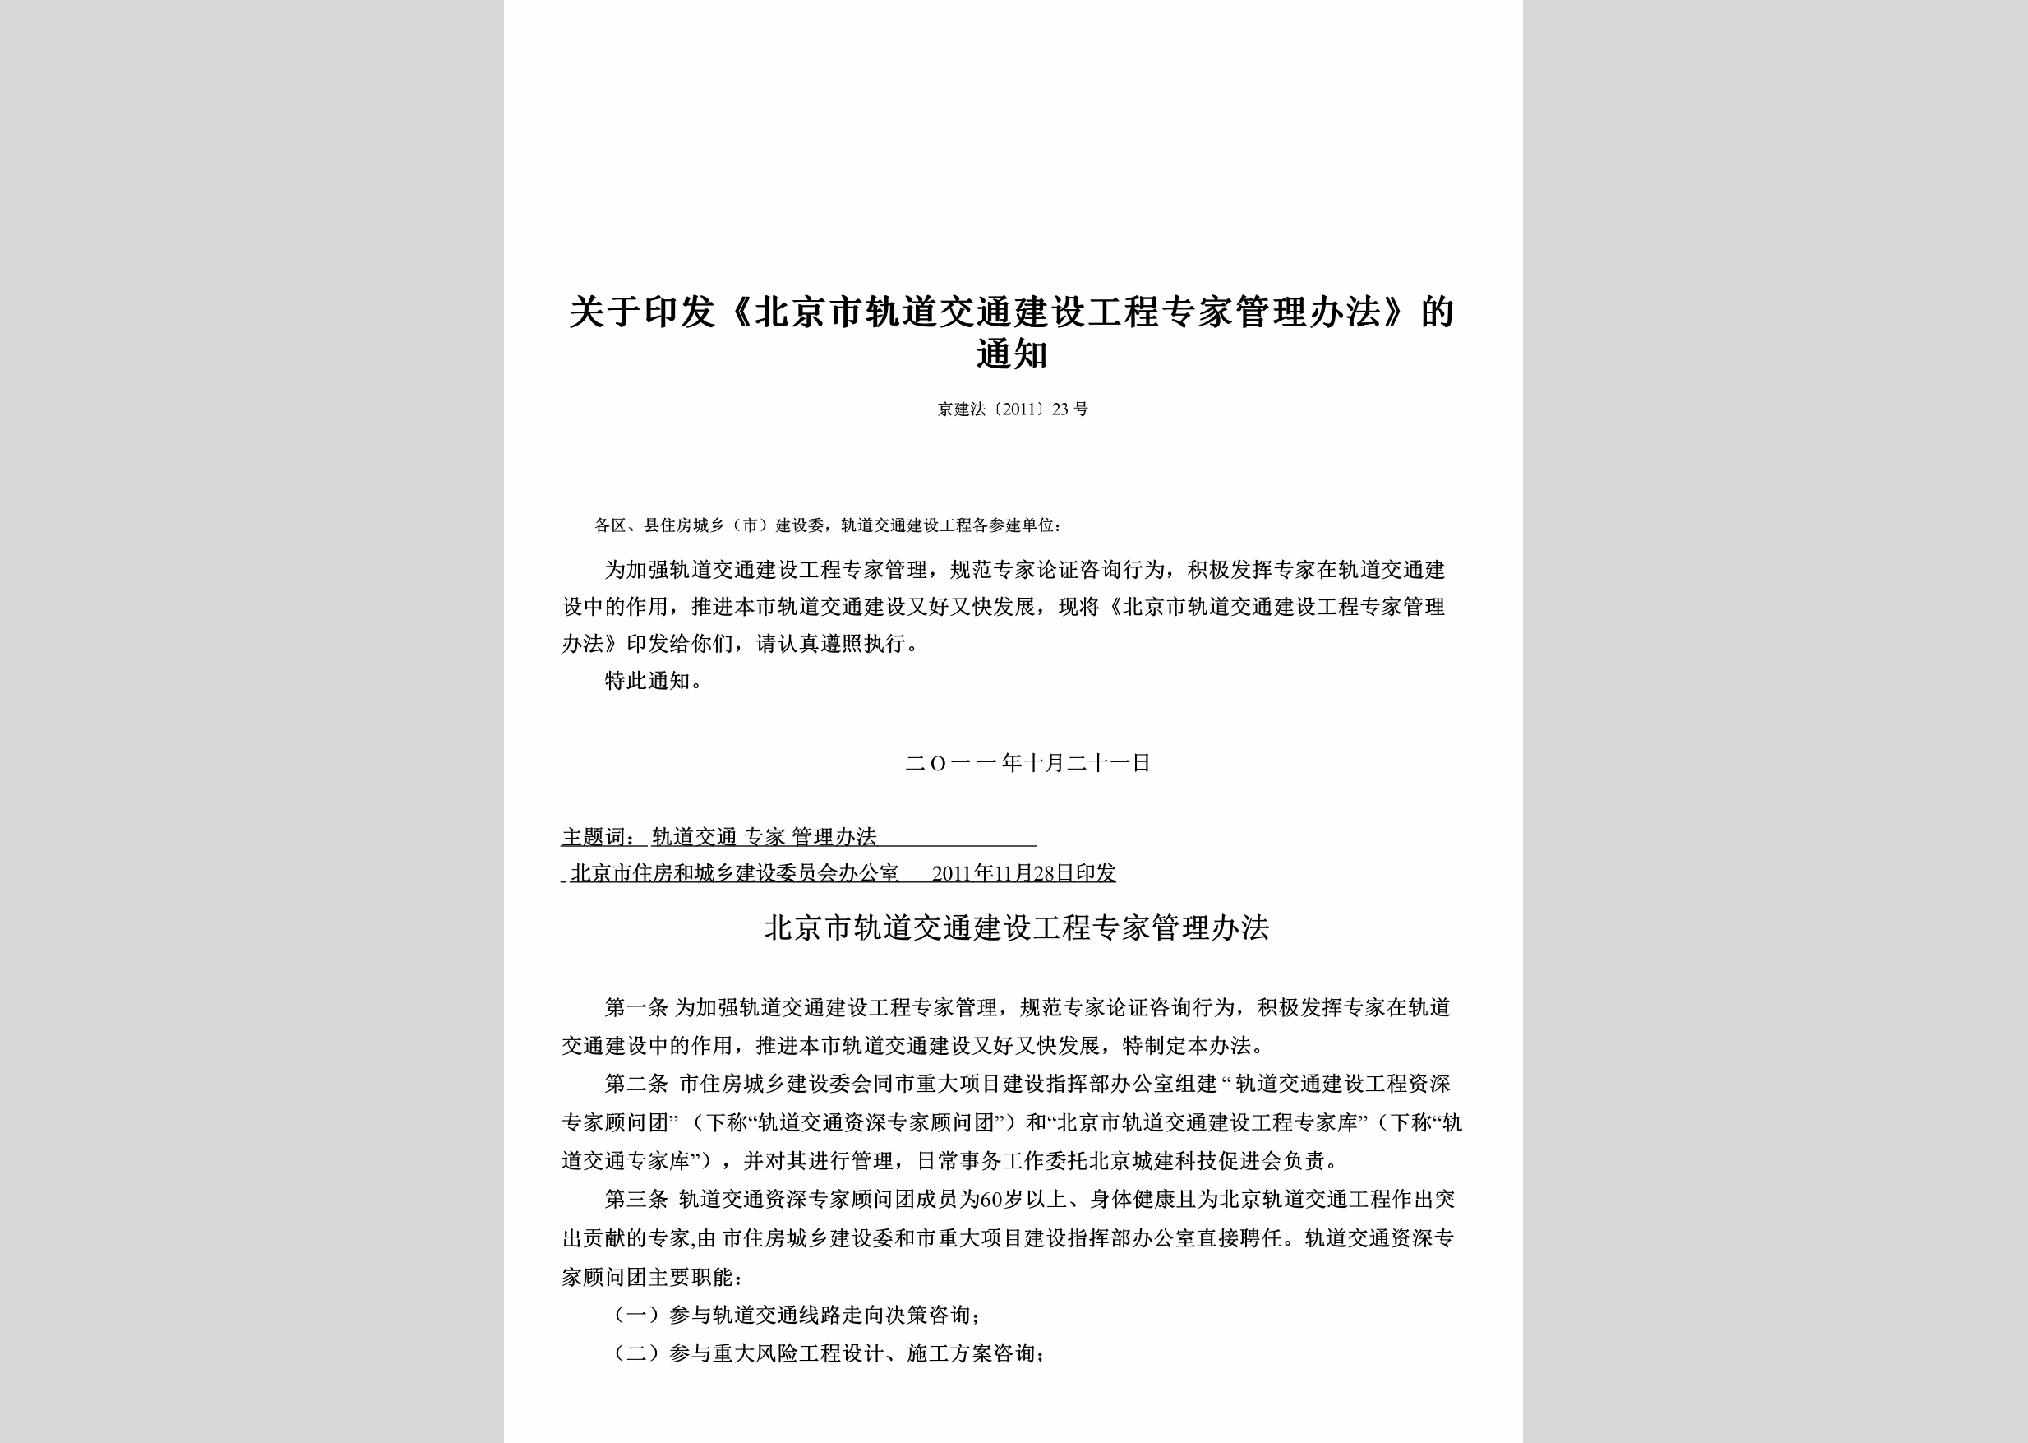 京建法[2011]23号：关于印发《北京市轨道交通建设工程专家管理办法》的通知